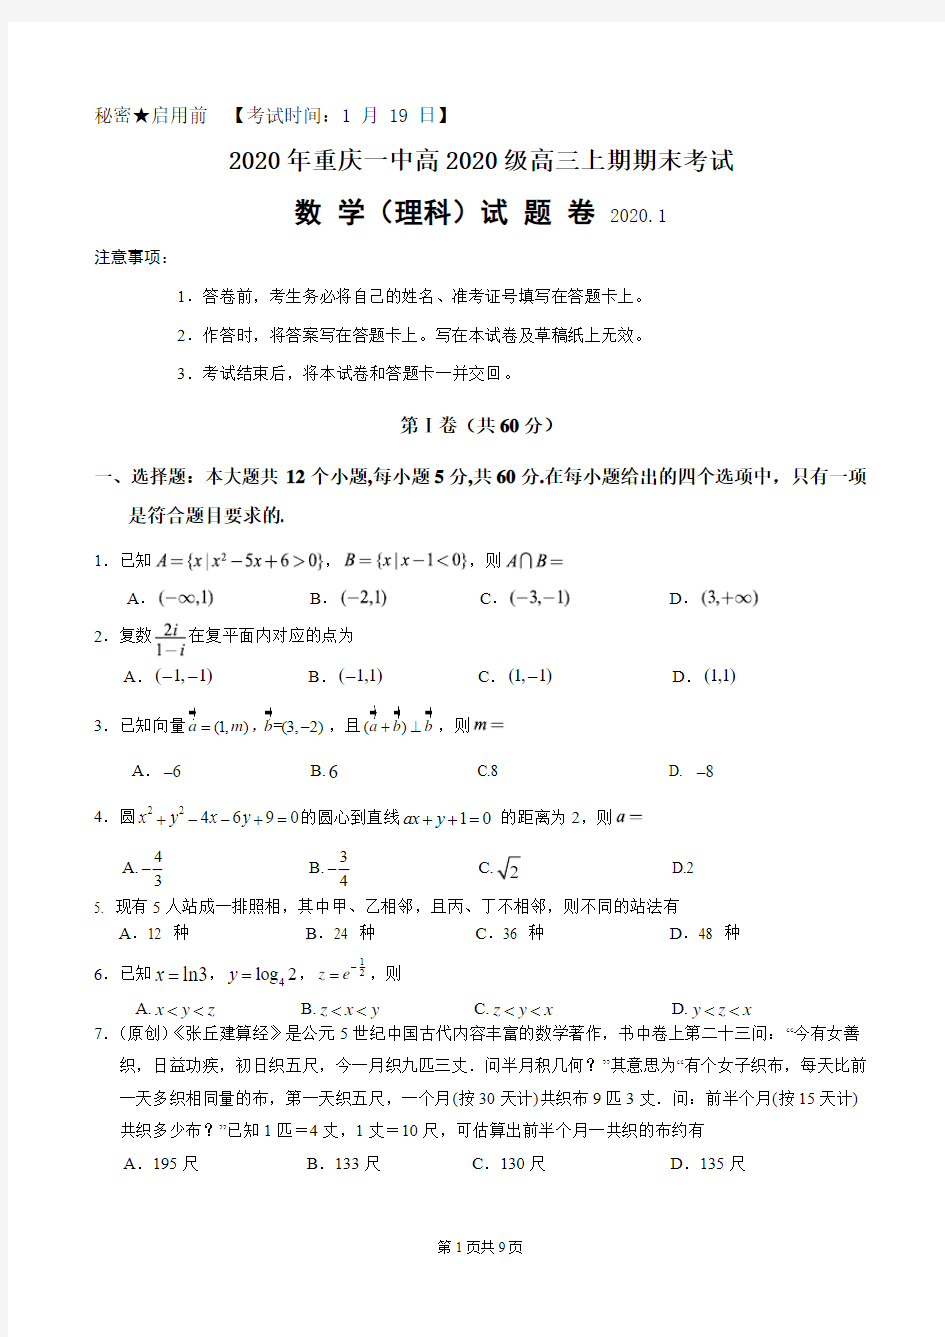 2020年重庆一中高2020级高三上期期末考试 数学(理科)试卷及答案